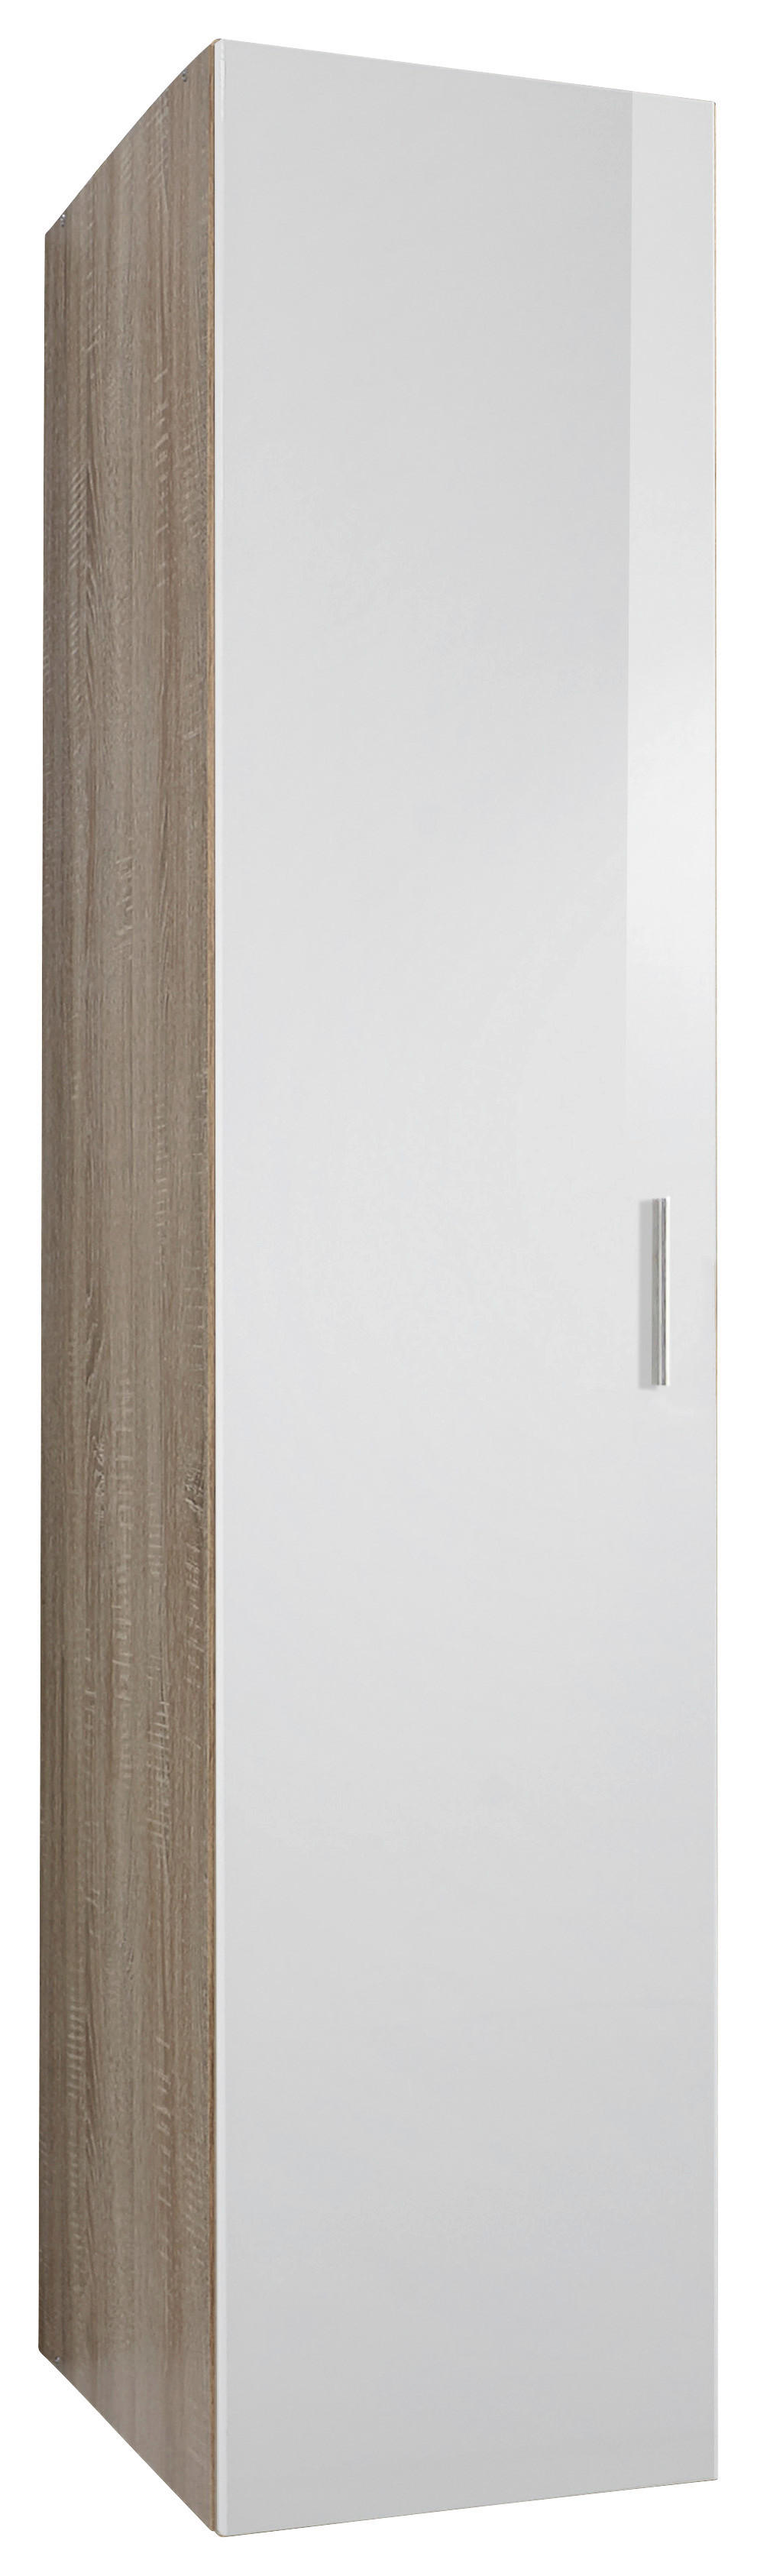 Xora SKŘÍŇ NA ODĚV, bílá, barvy dubu, 45/185/40 cm - bílá,barvy dubu - kompozitní dřevo